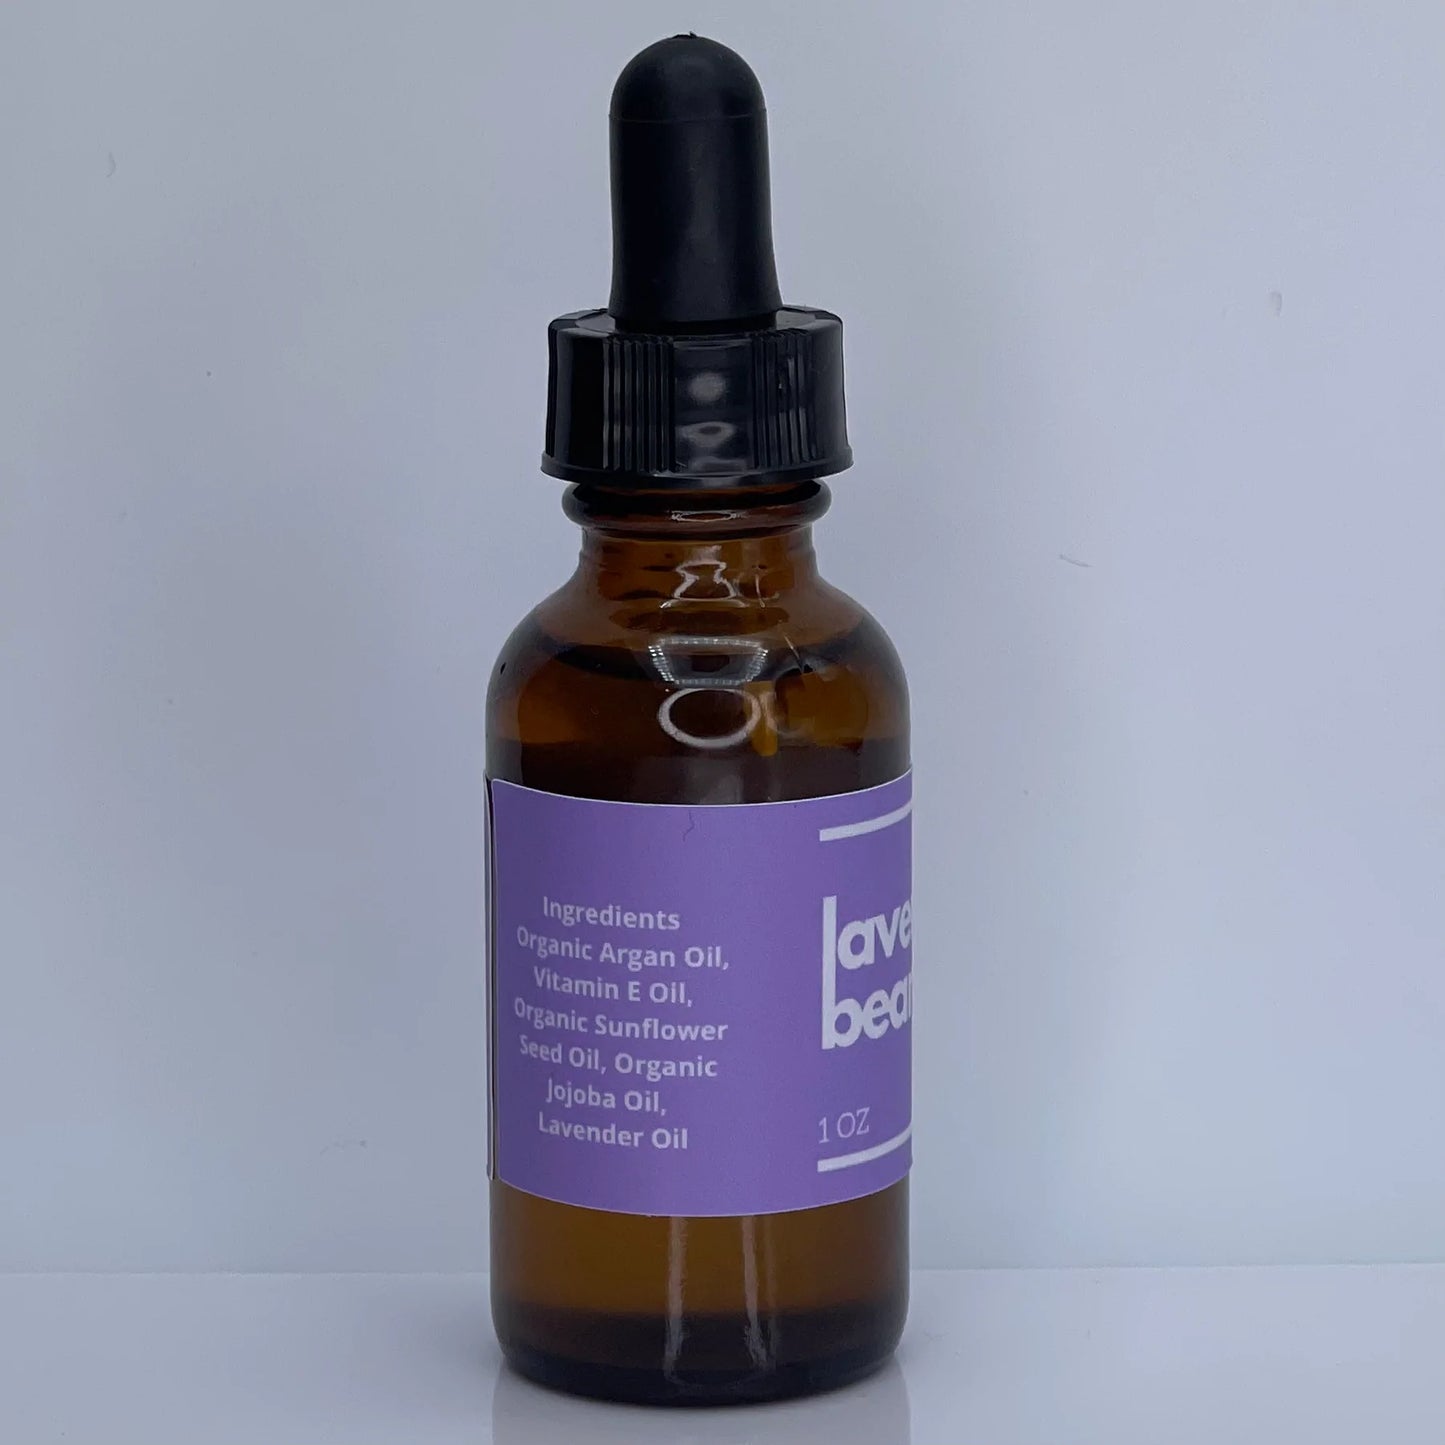 Wicked Fox - Lavender Beard Oil